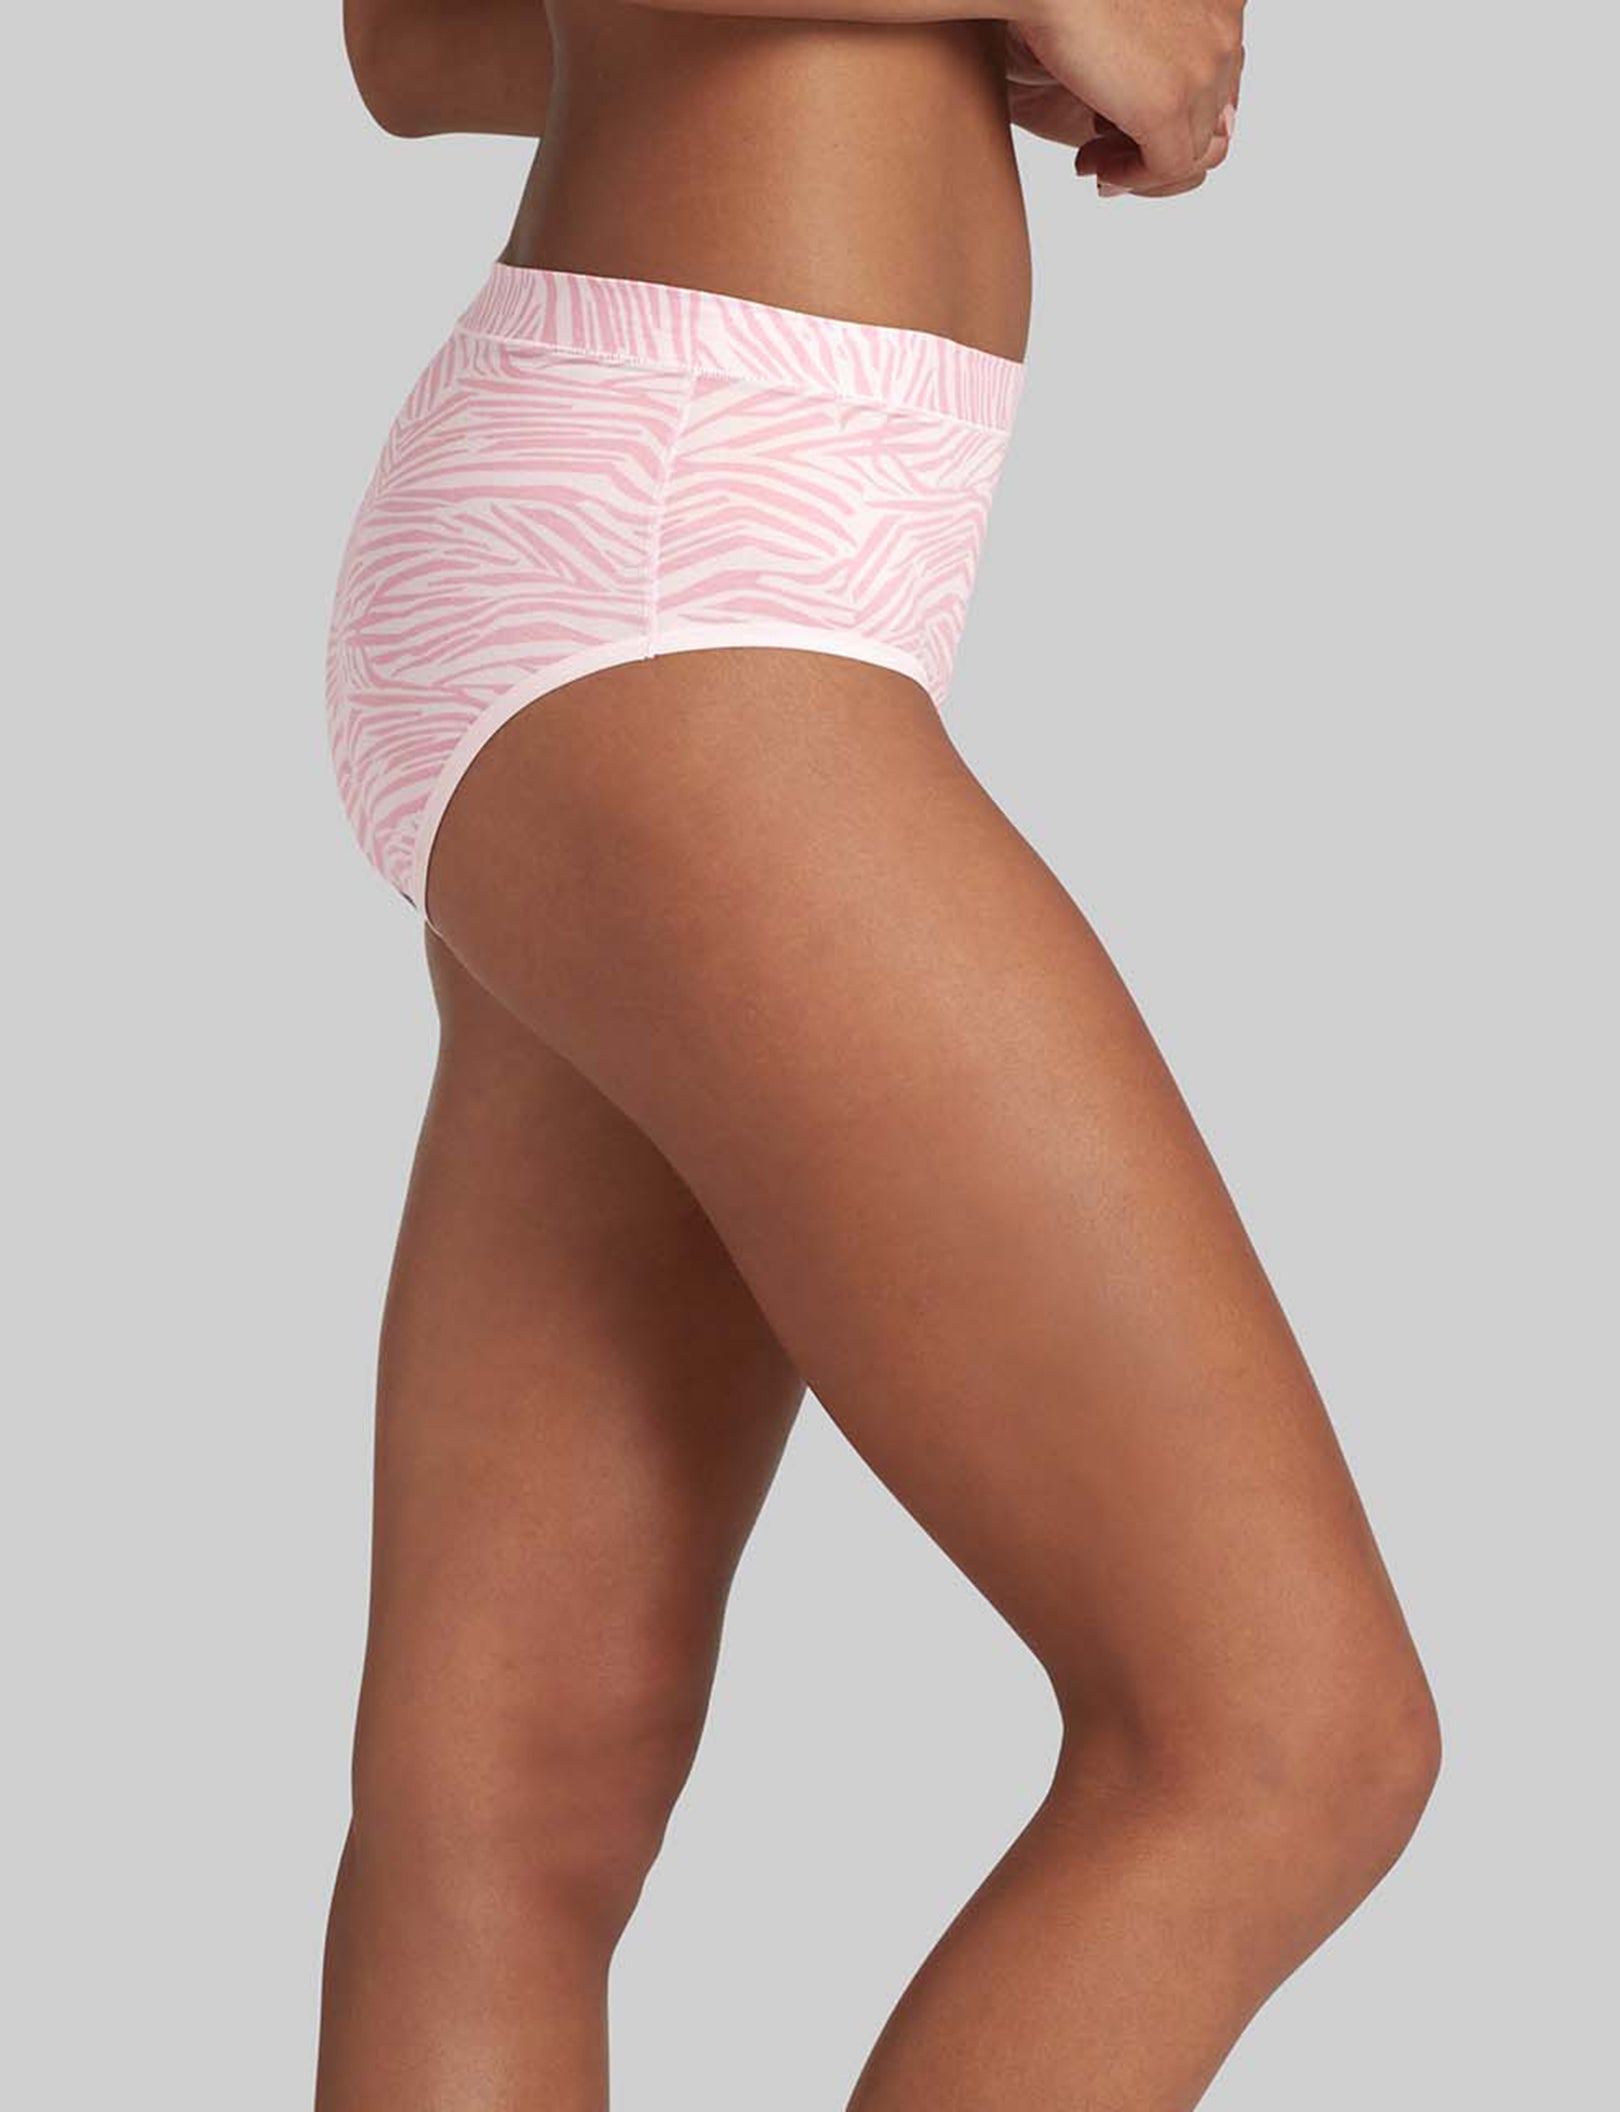 Buy SHINEMART Women's Cotton High Leg Brief Underwear All Day